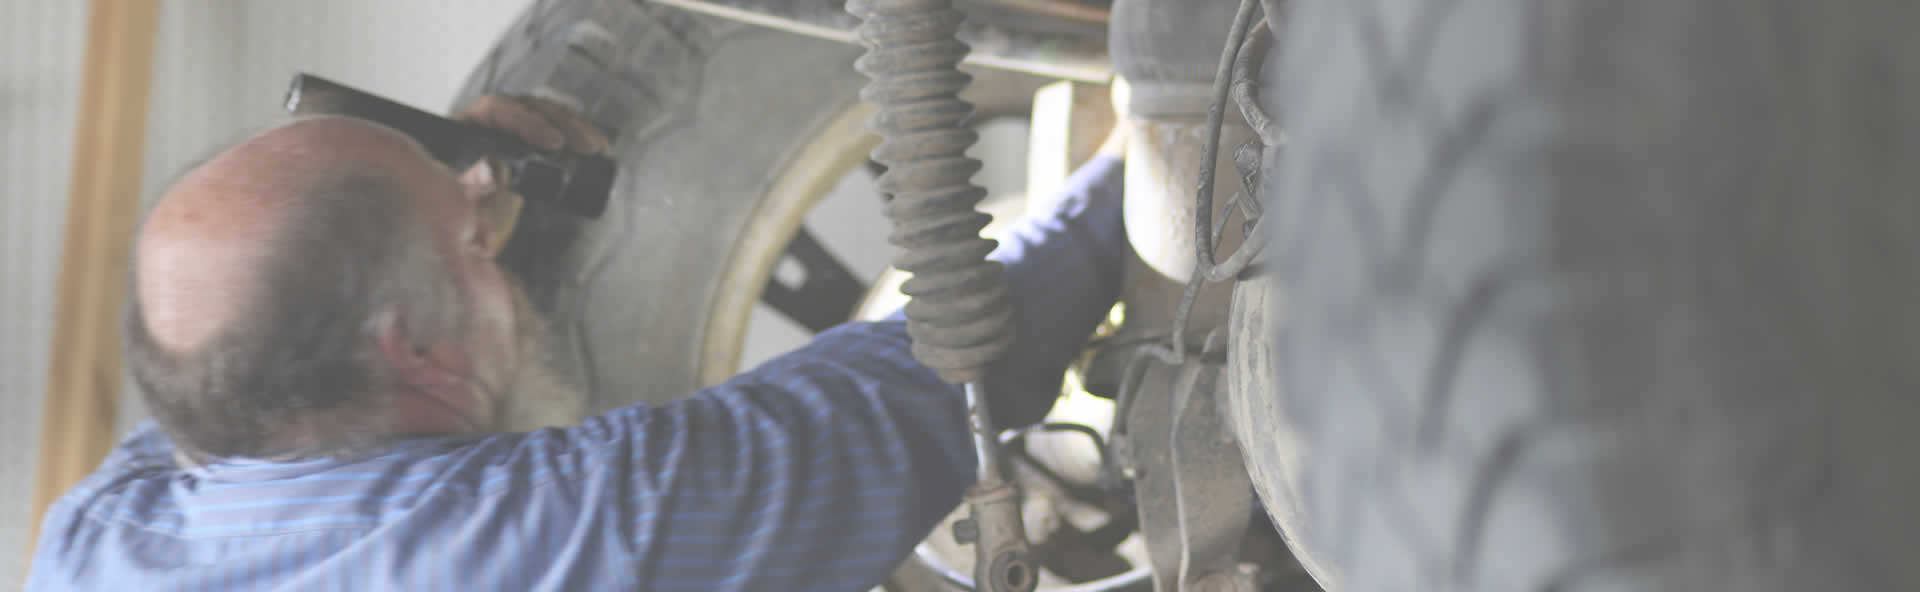 Windsor Auto Repair â Trusted local car repair in Windsor Colorado